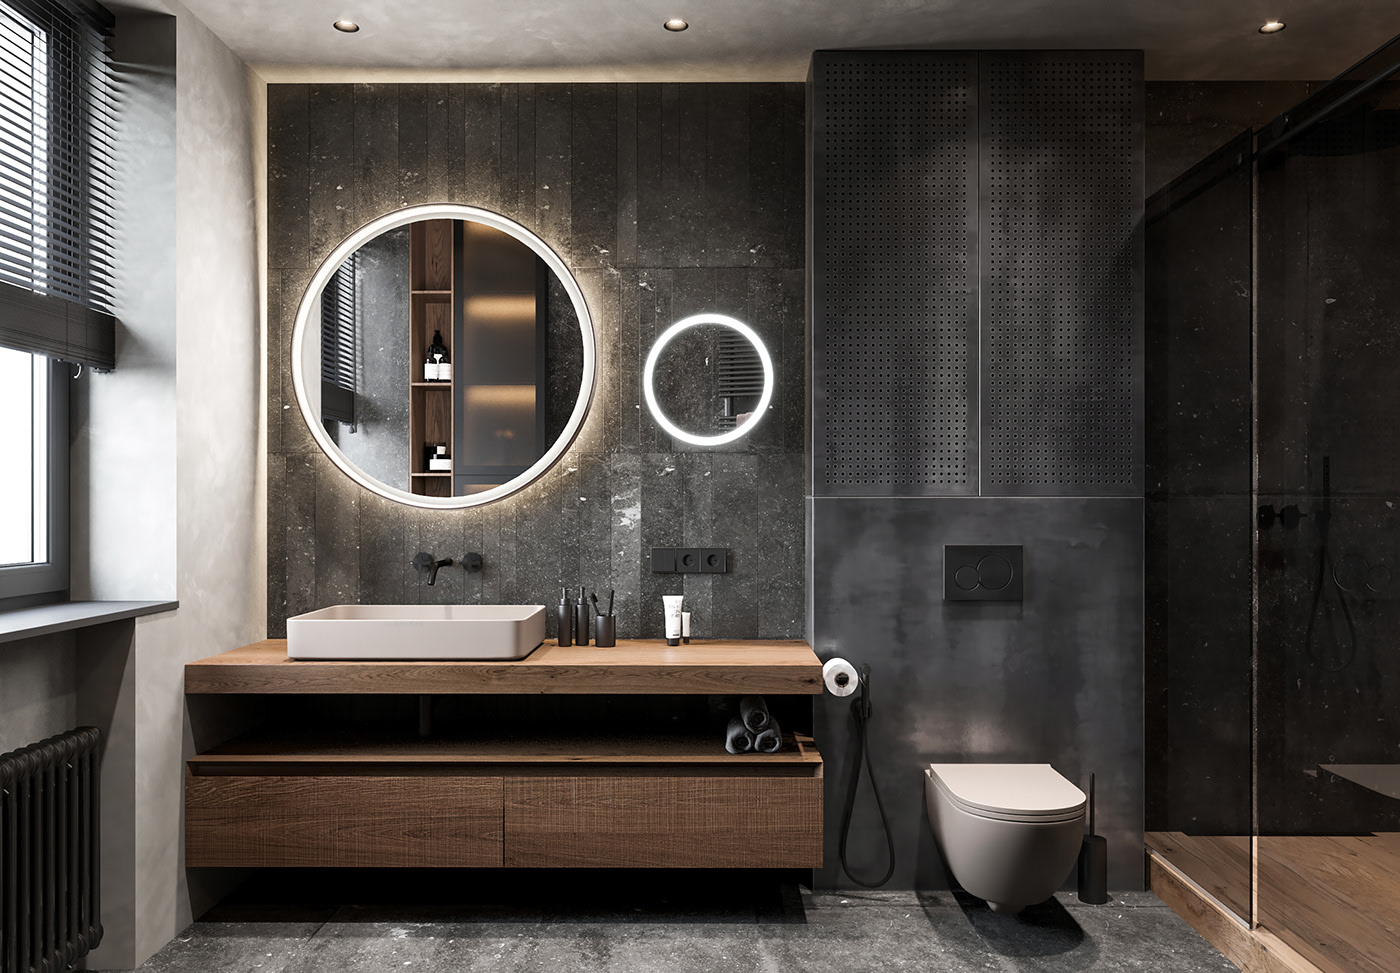 Những mẫu thiết kế phòng tắm đẹp và hiện đại nhất